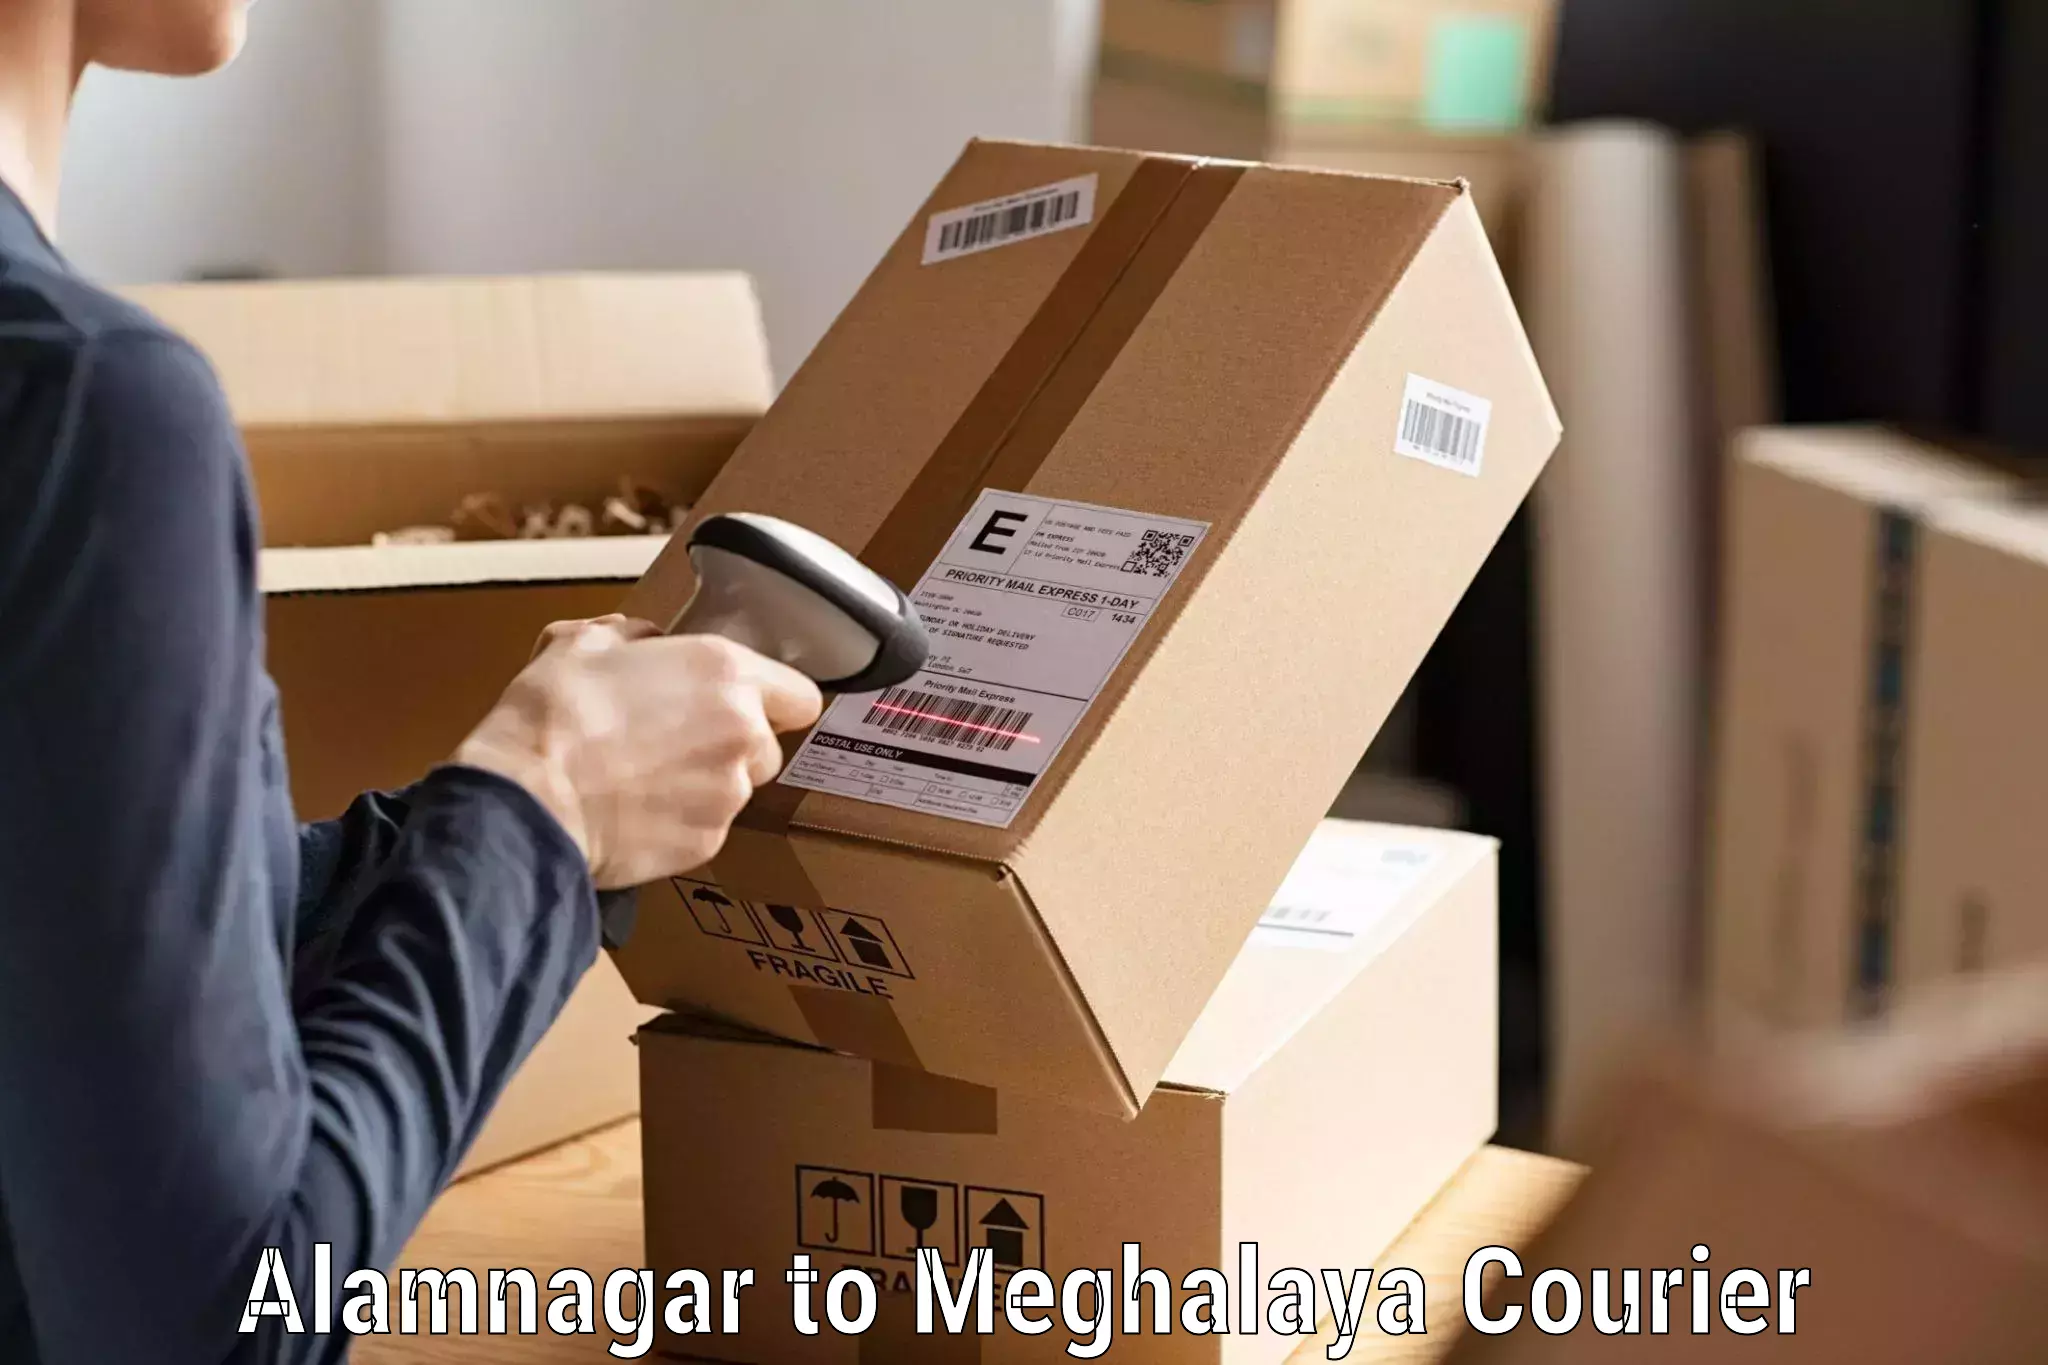 Reliable courier service Alamnagar to Shillong